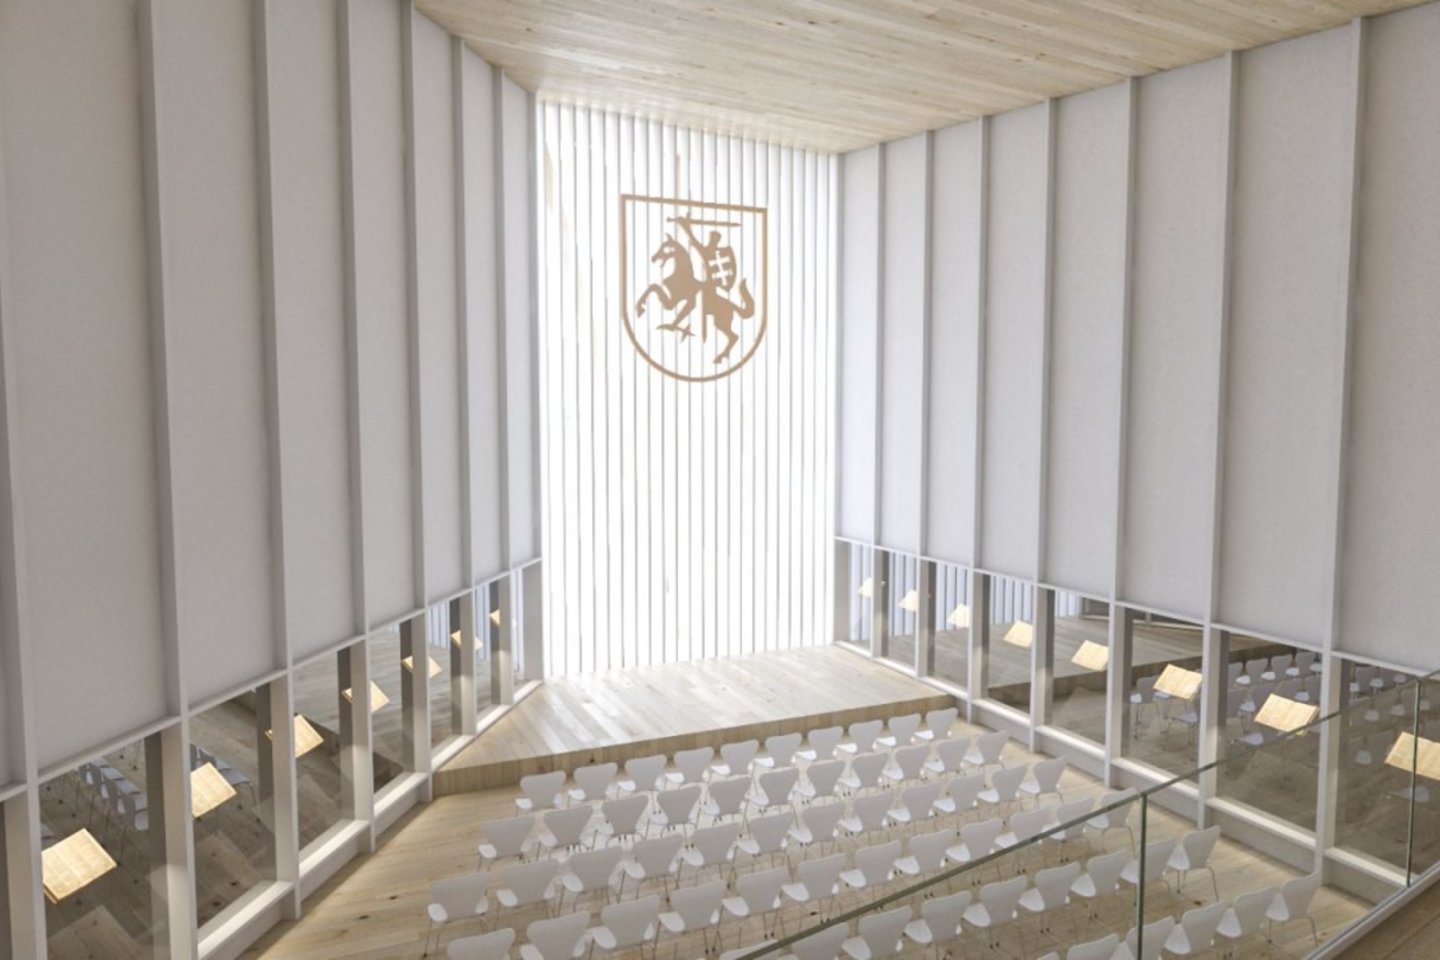 Vilniaus miesto savivaldybė ir Kultūros ministerija baigė derybas su ispanų architektūros studija „Arquivio architects“, pernai tarptautiniame architektūros konkurse pripažinta geriausio Nacionalinės koncertų salės projekto autore.<br>Vizual.